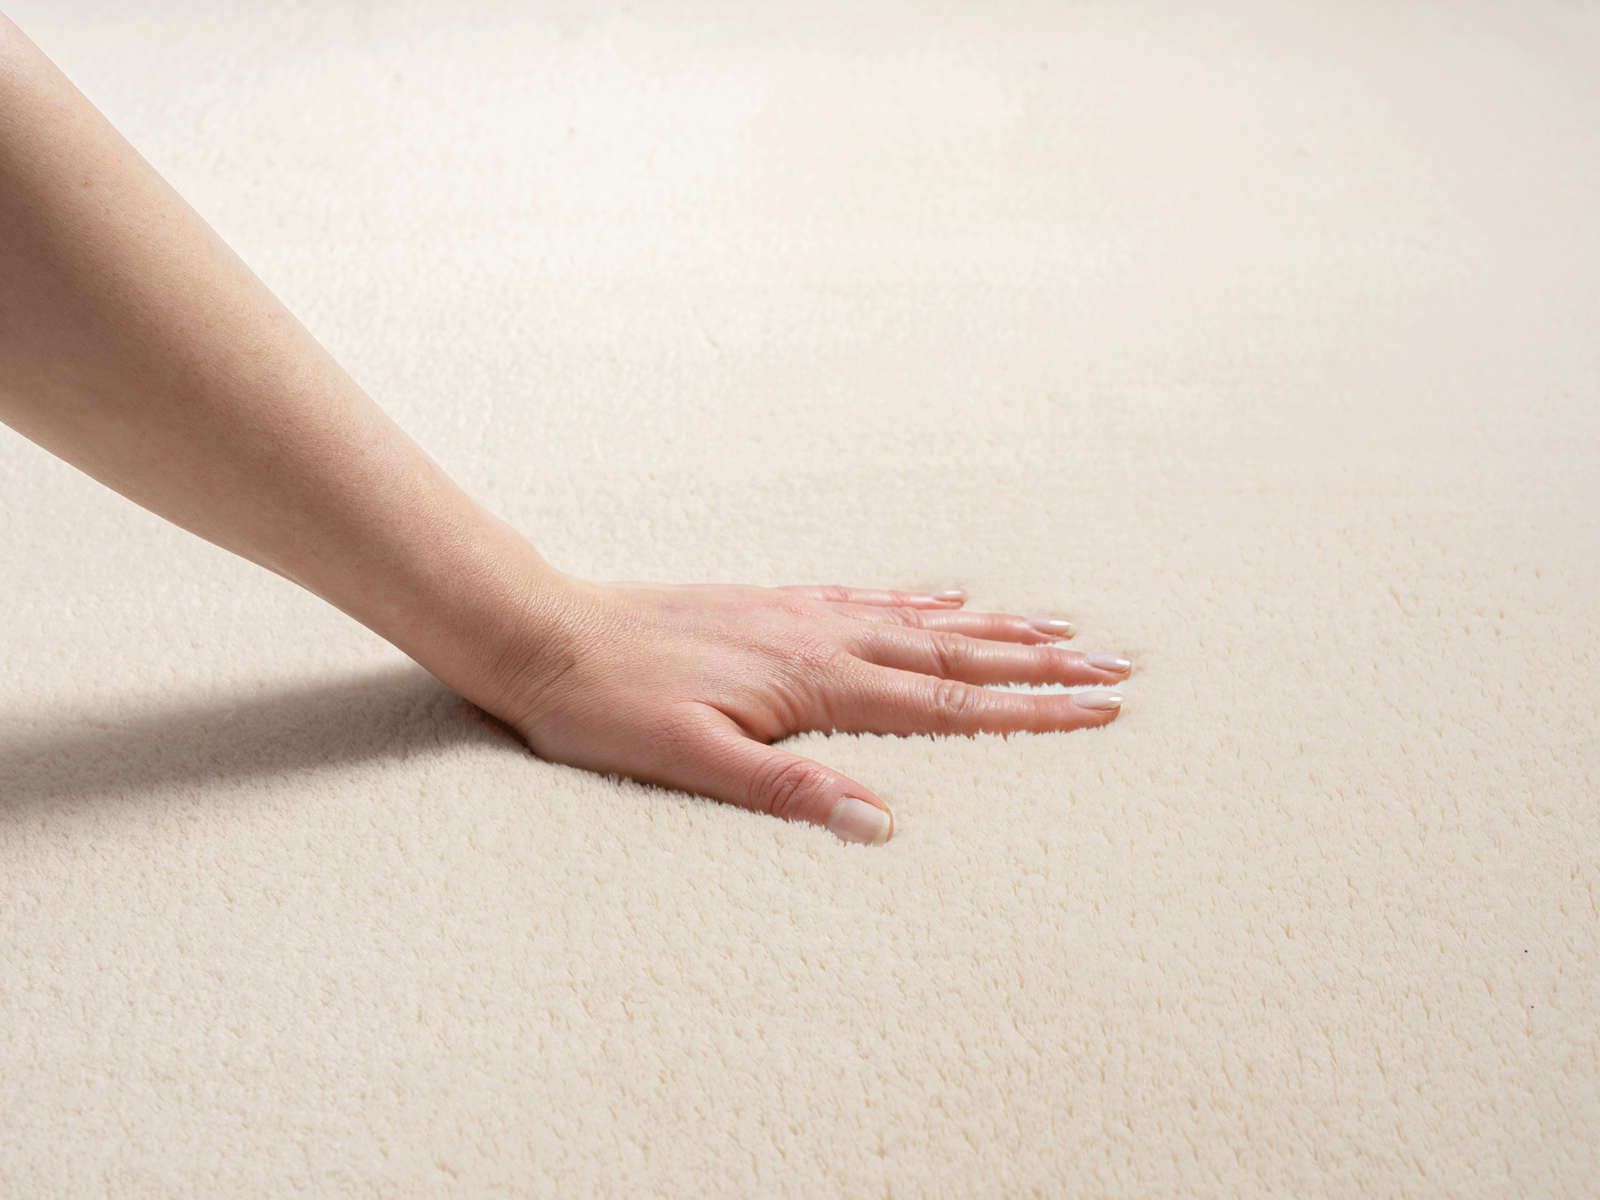             Soft high pile carpet in beige - 170 x 120 cm
        